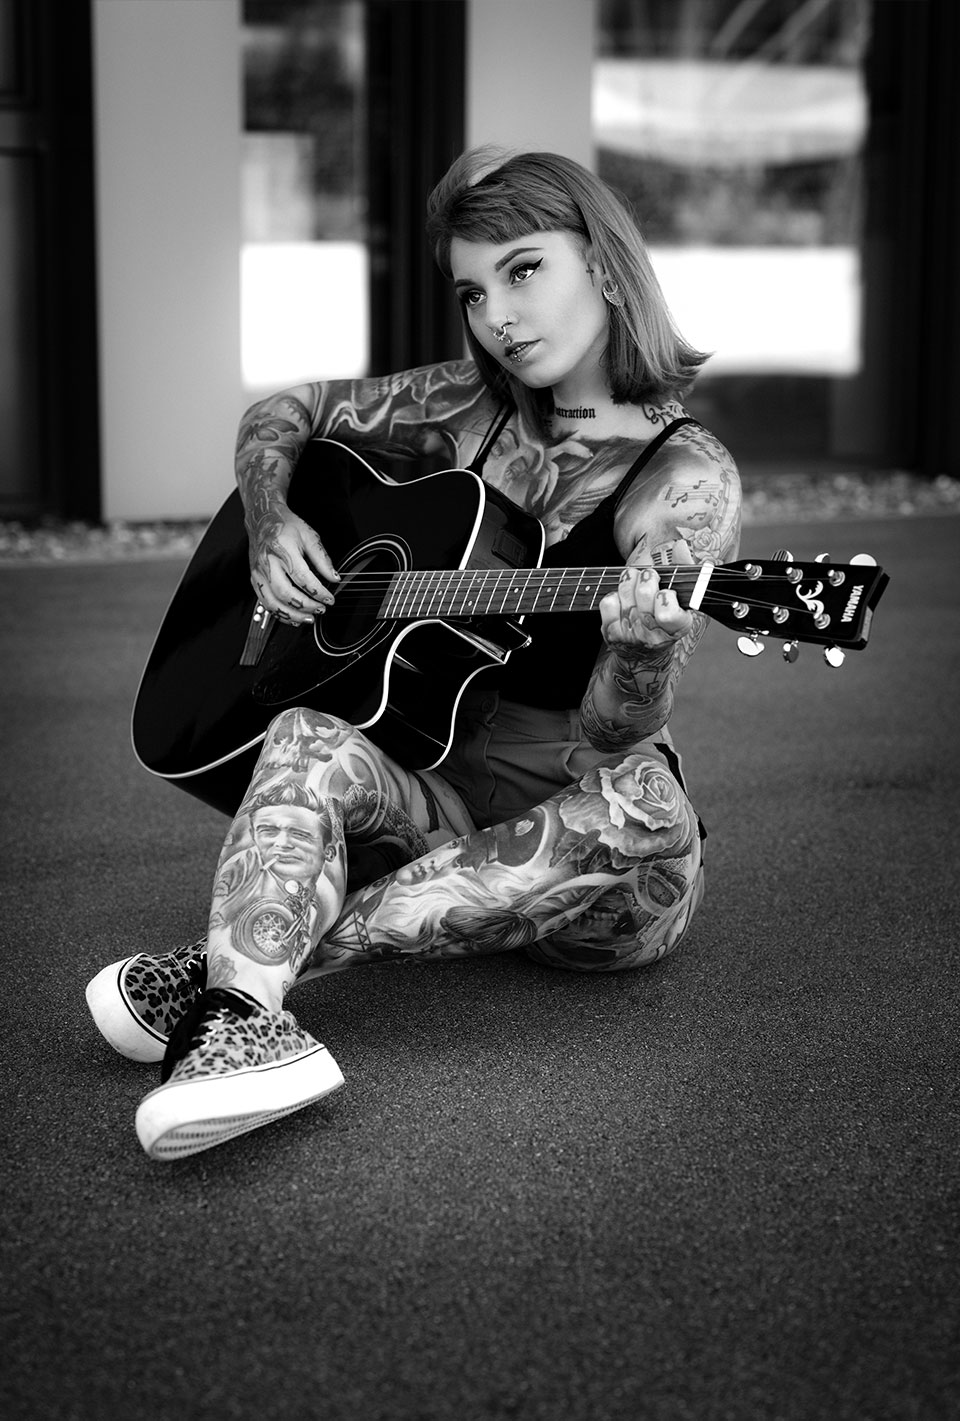 Eine tätowierte Frau mit Piercings sitzt auf dem Boden und spielt Gitarre.